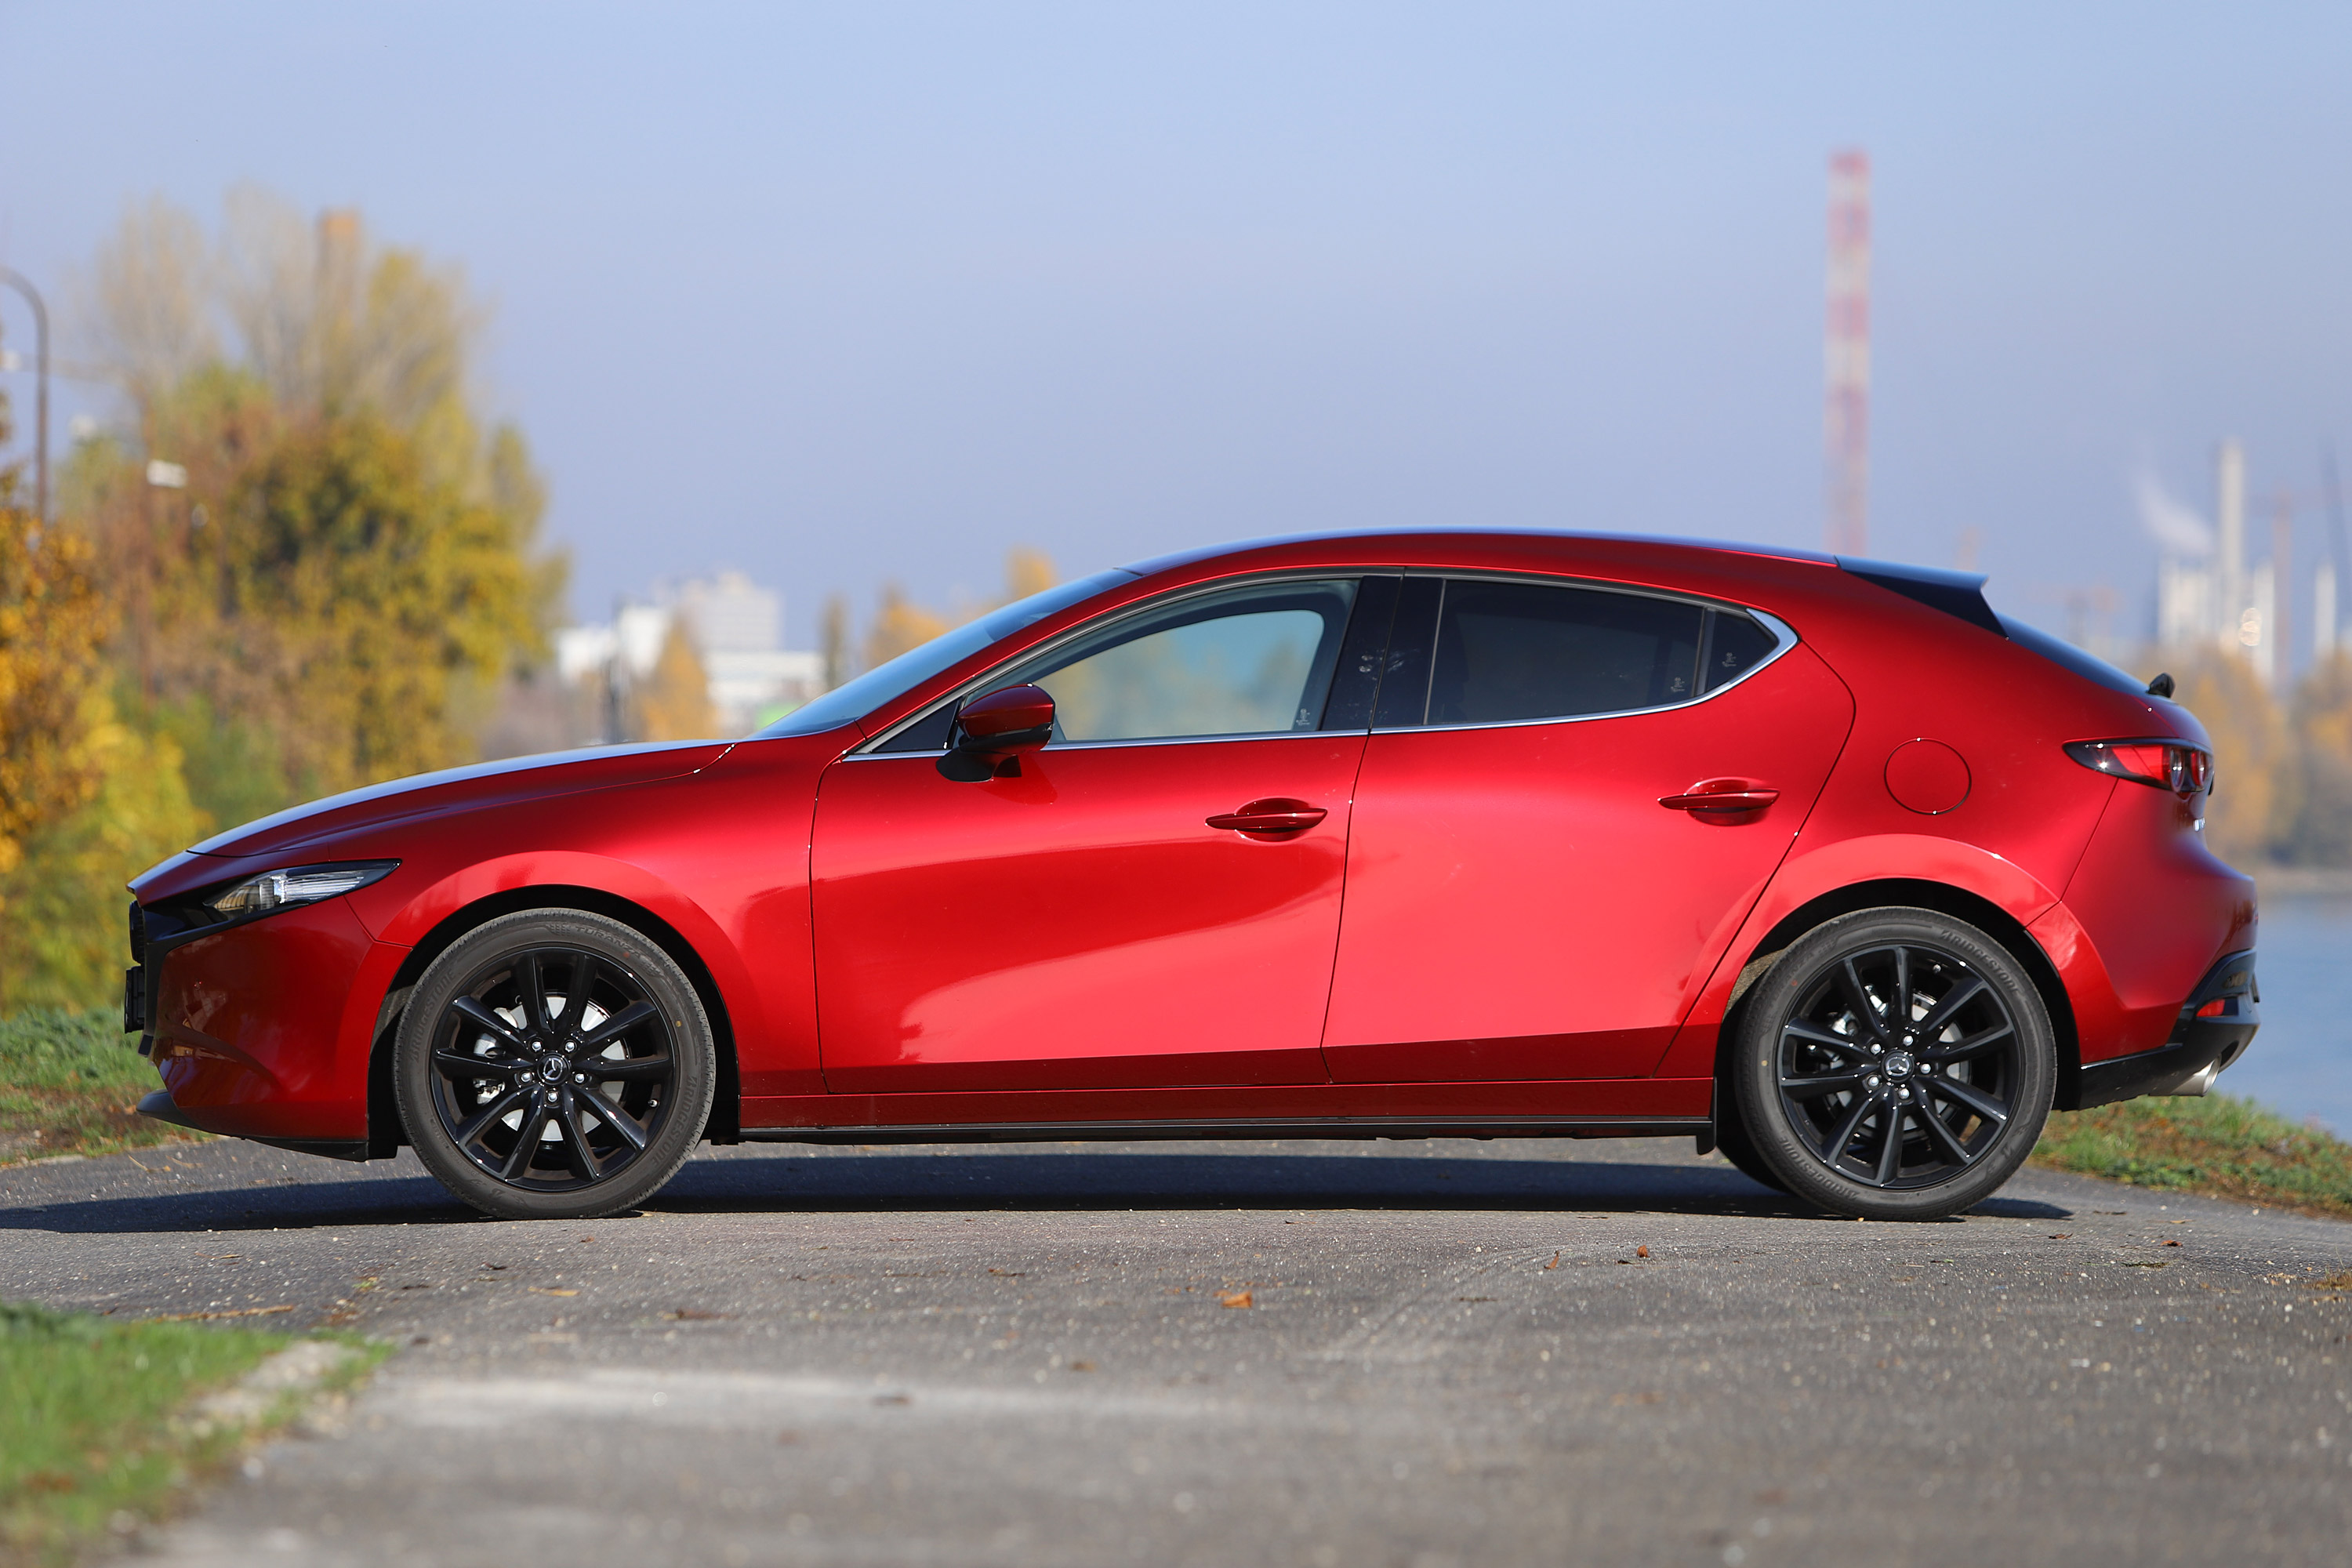 Benzinmotor, ami eddig még senkinek nem sikerült – Mazda3 Skyactiv-X teszt 6